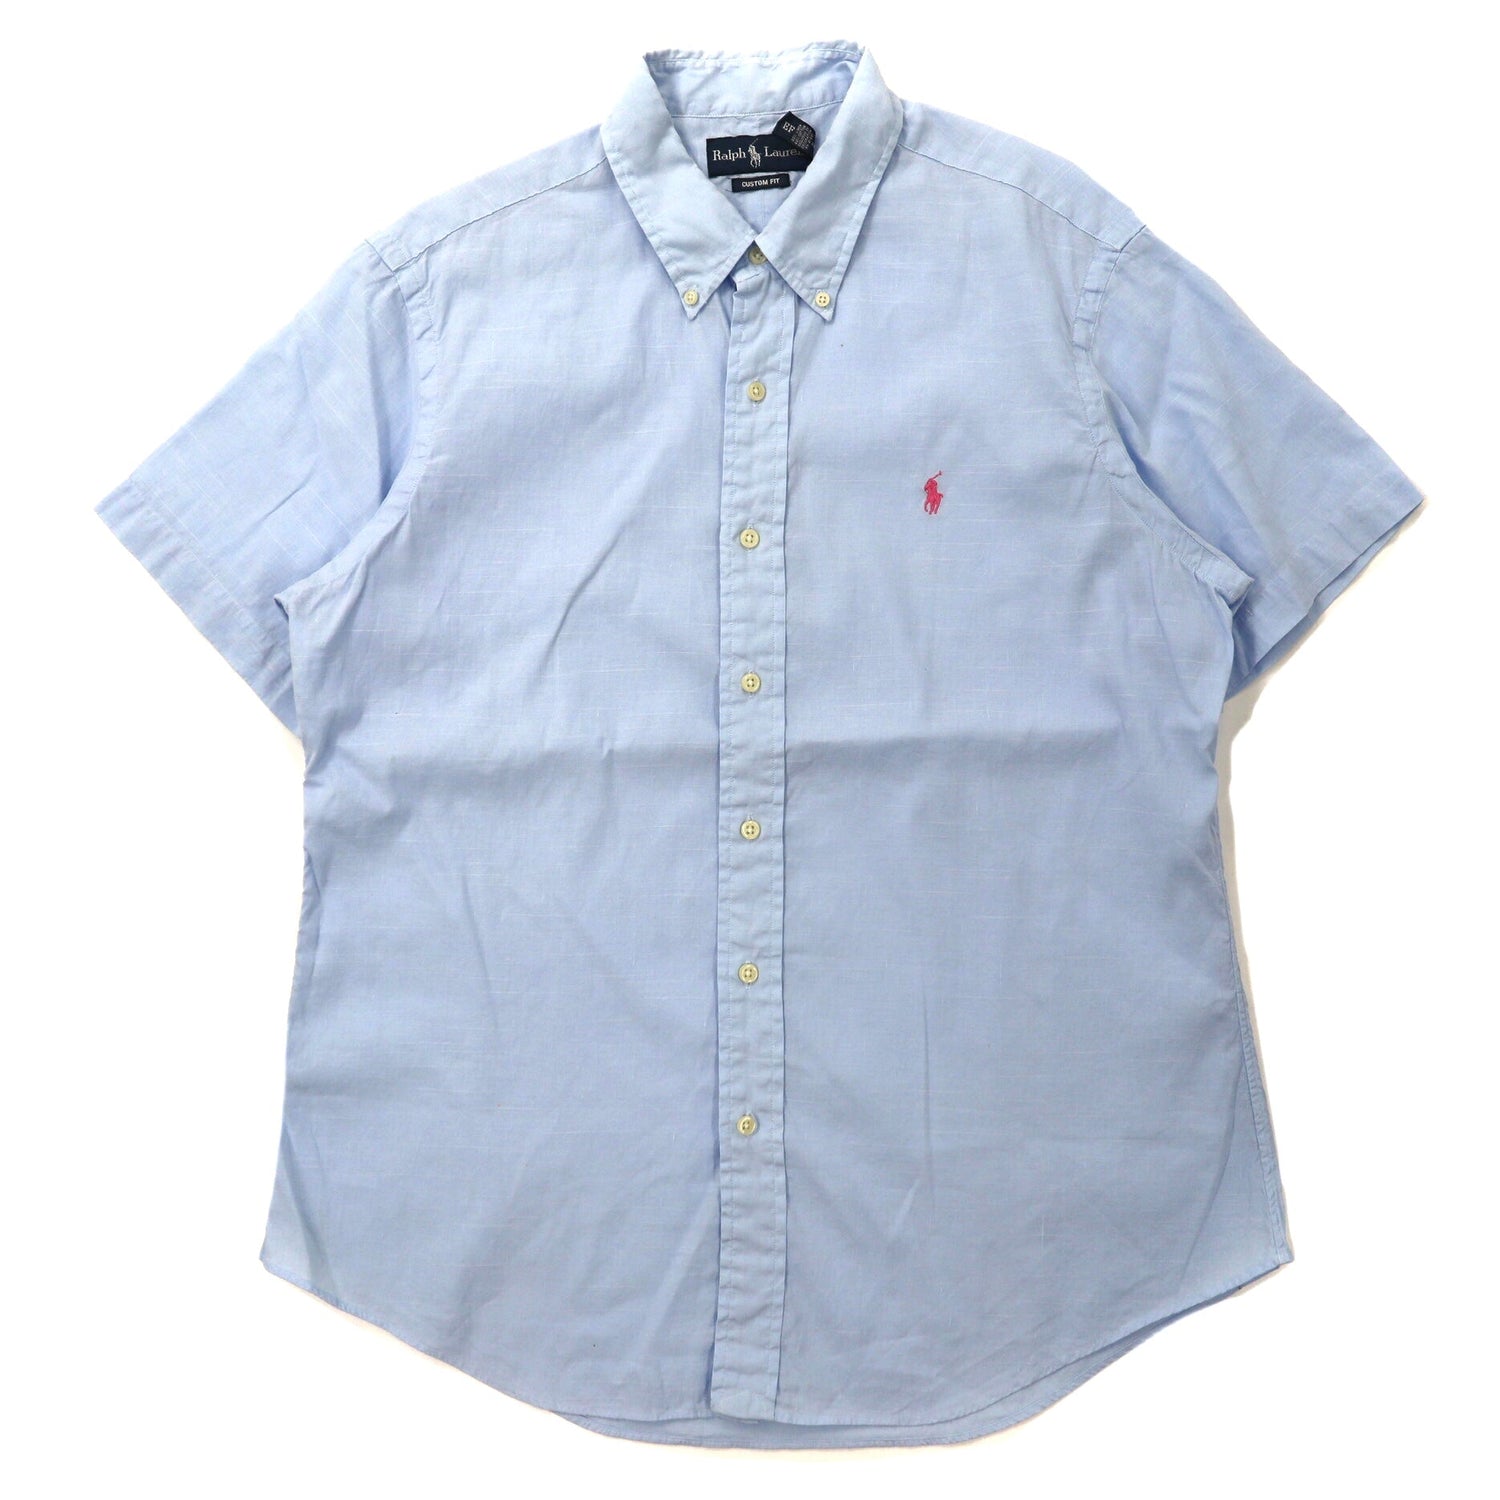 Ralph Lauren 半袖ボタンダウンシャツ XL ブルー リネン CUSTOM FIT スモールポニー刺繍-Ralph Lauren-古着